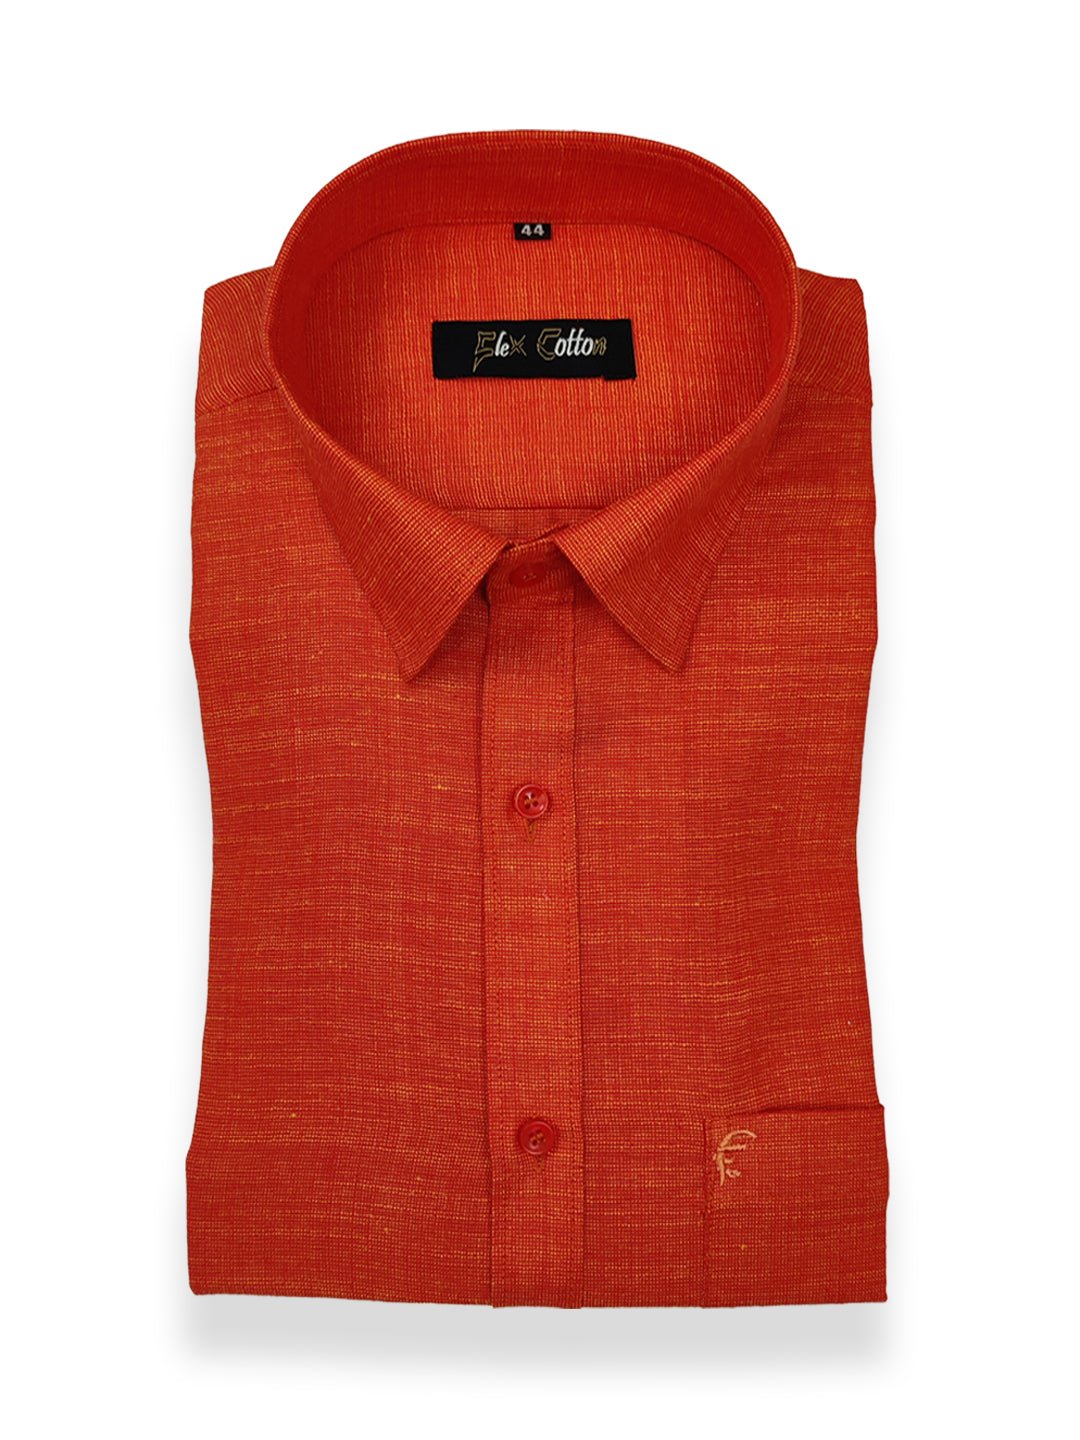 Orange Color Dual Tone Matty Cotton Shirt For Men&